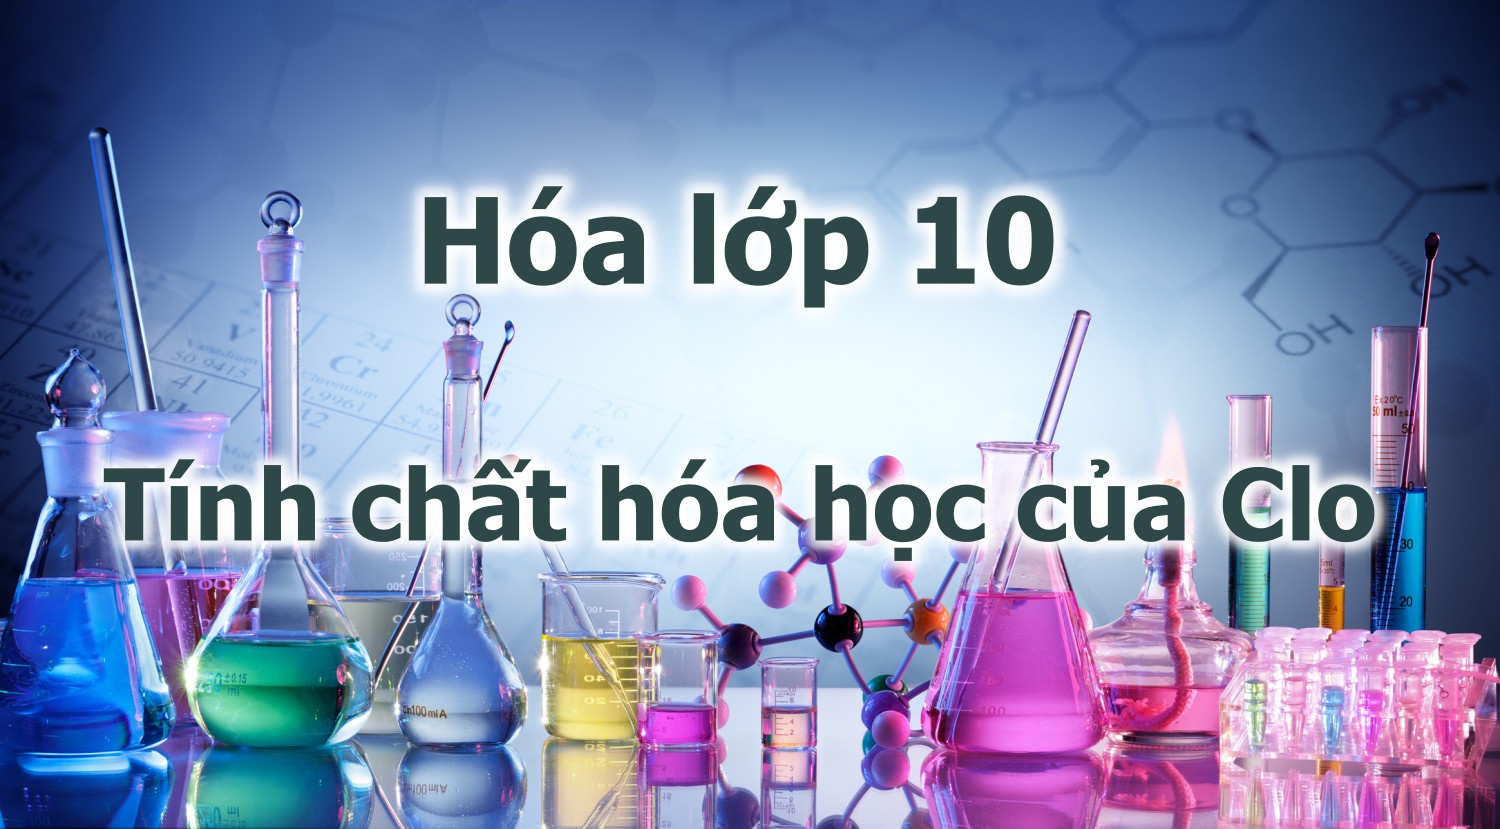 Tính chất hóa học của Clo - Môn Hóa lớp 10 - Butbi.hocmai.vn